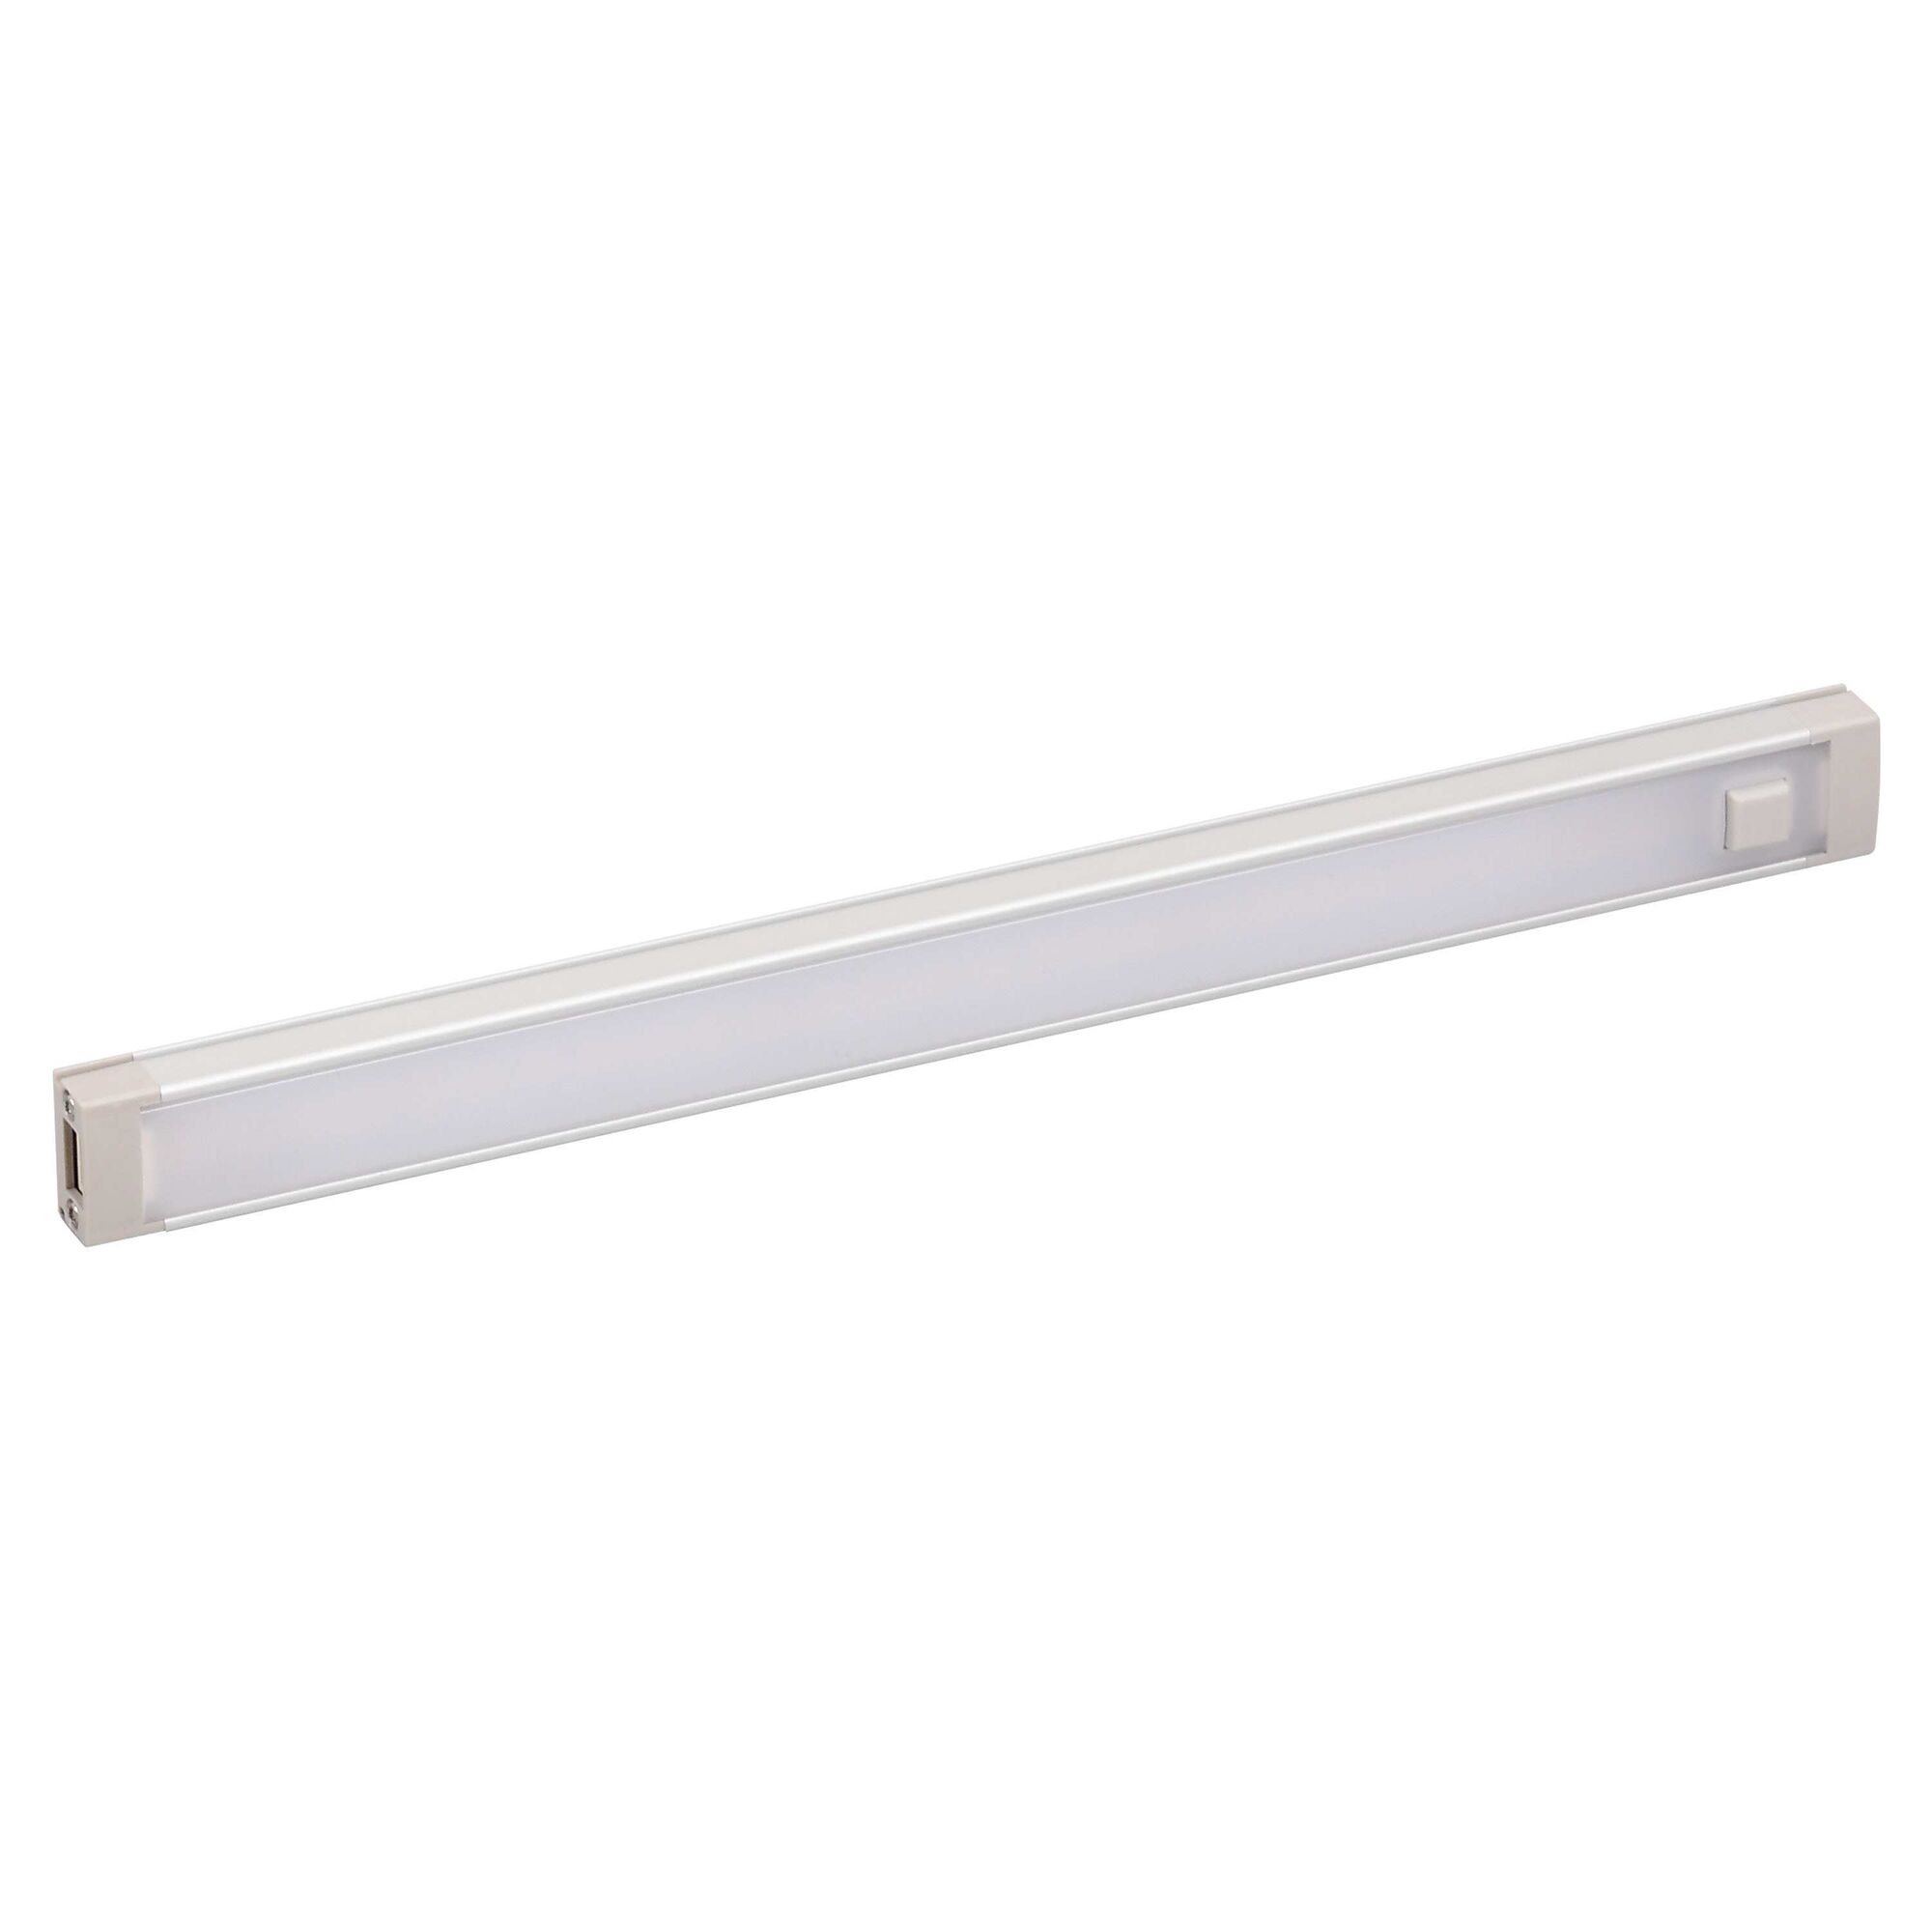 1 Bar LED under cabinet light